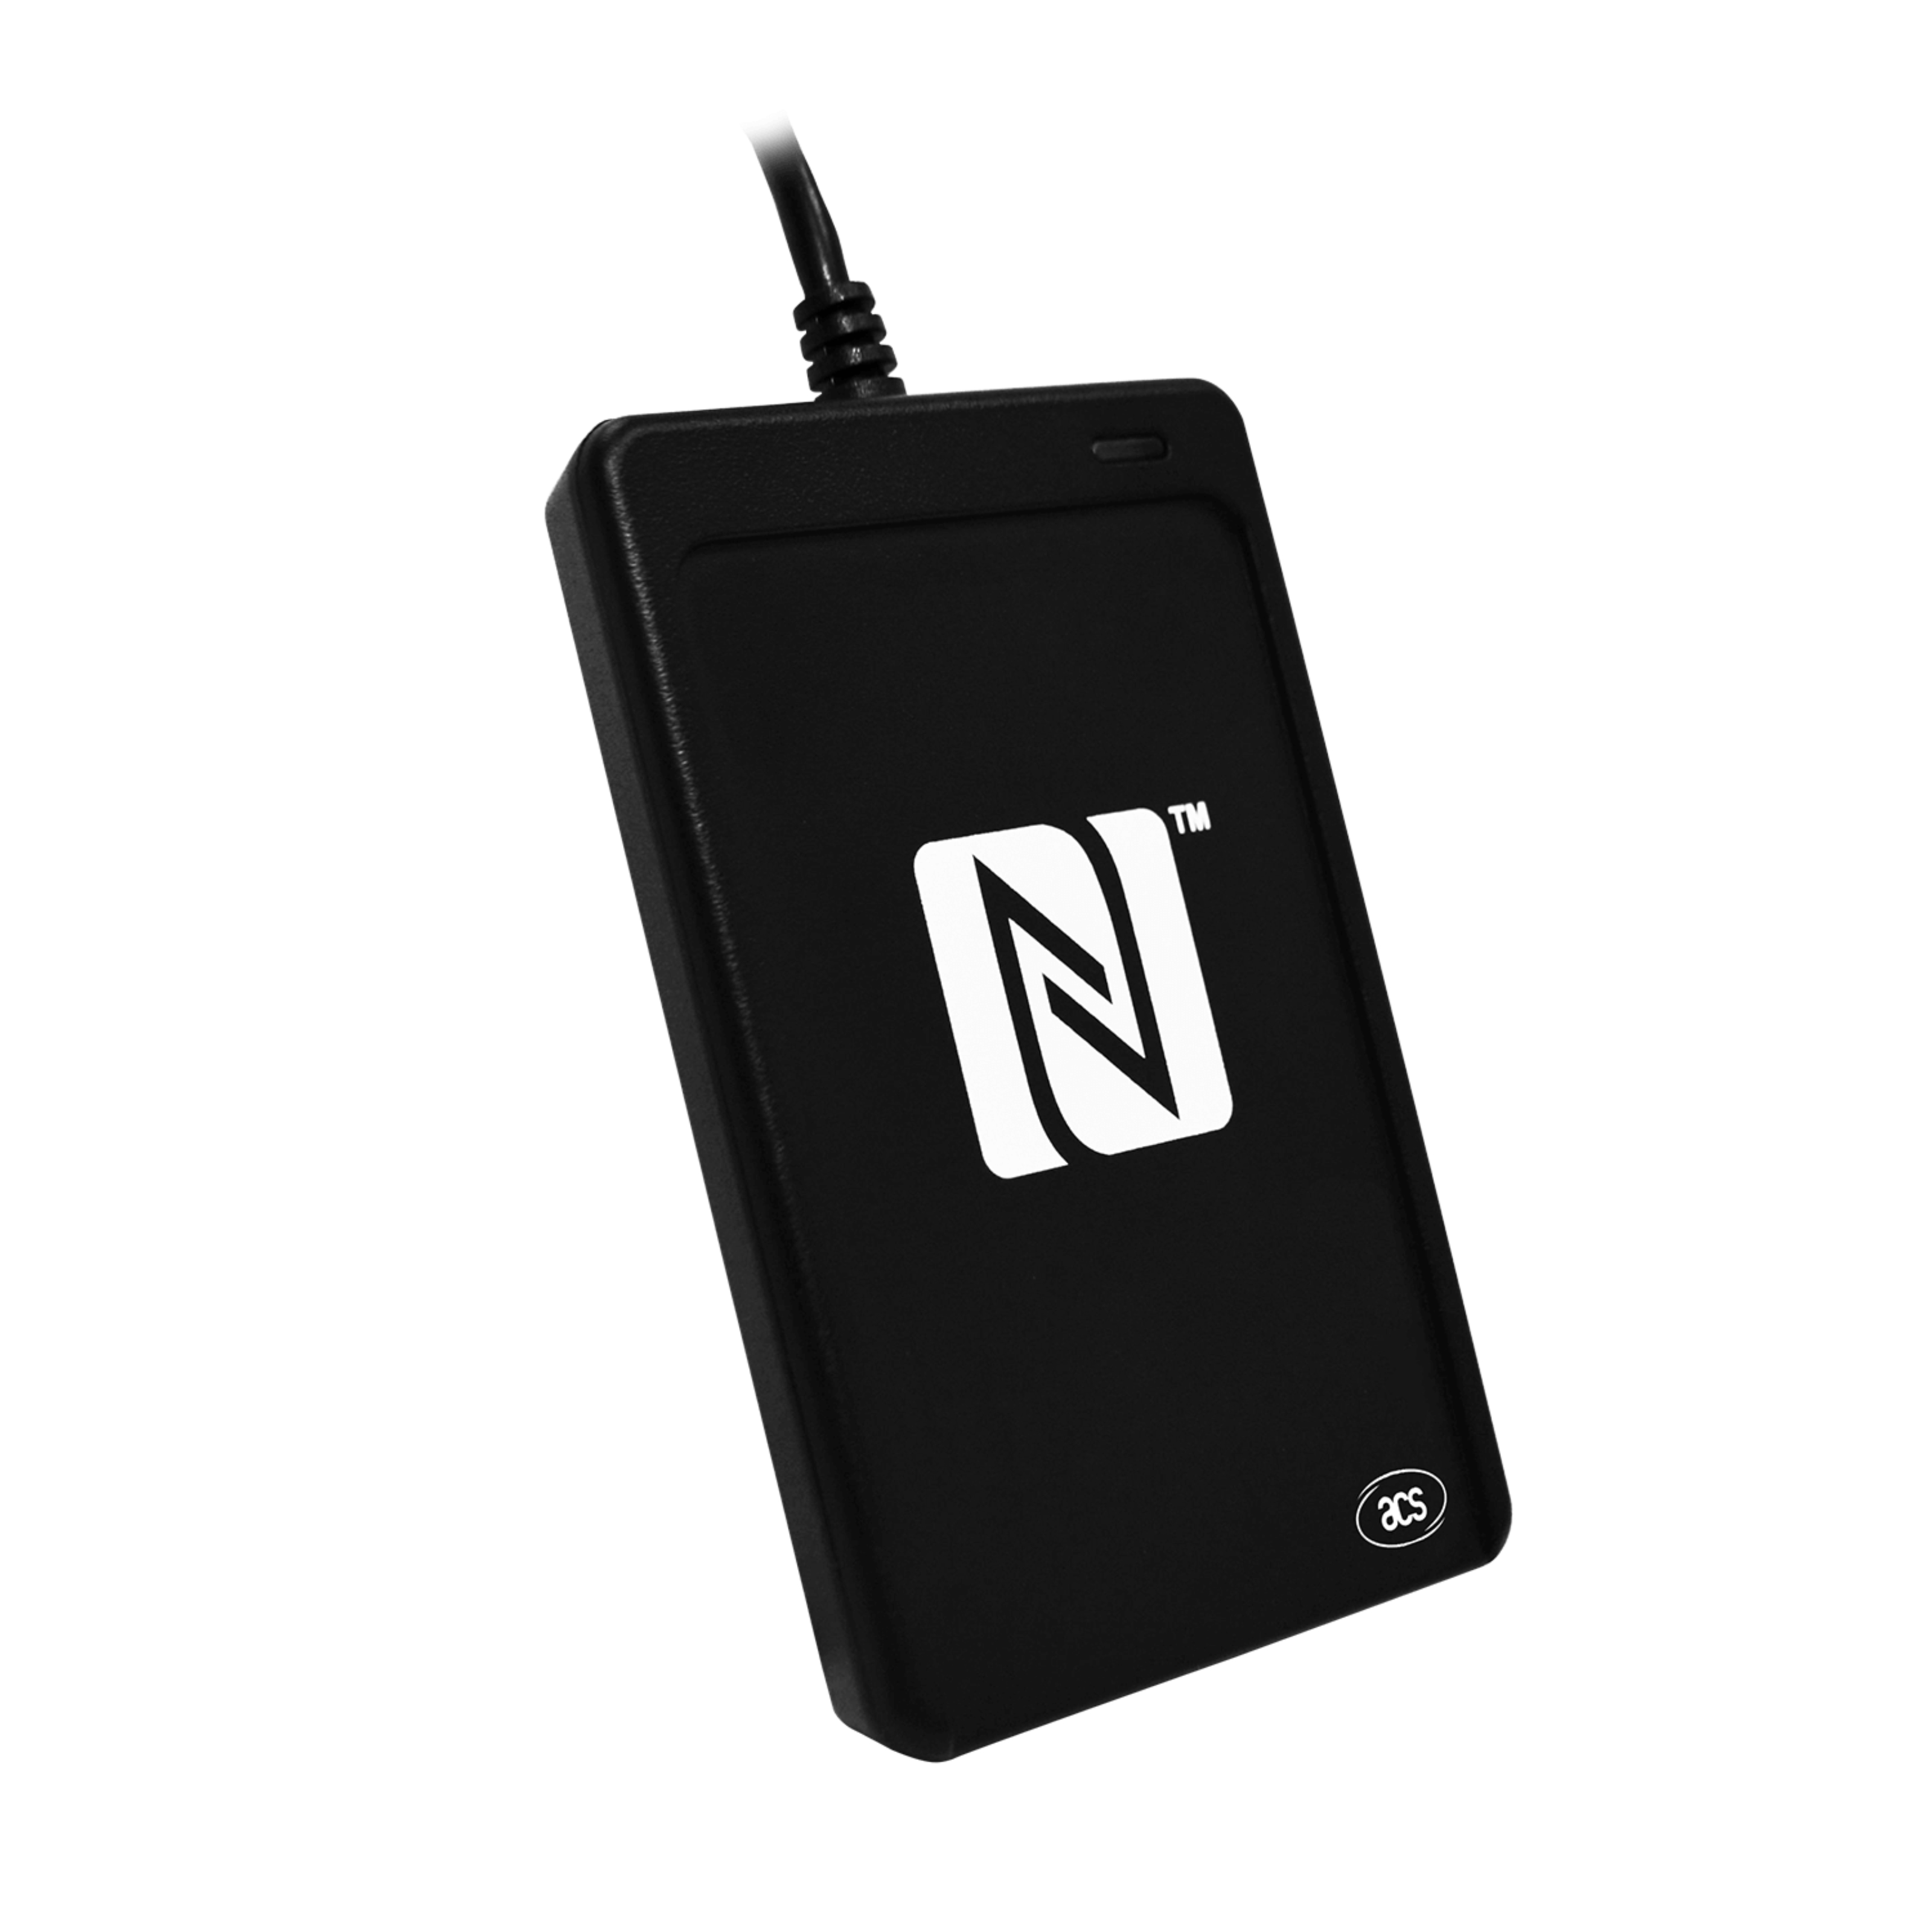 Seitenansicht des NFC Reader in schwarz  mit aufgedrucktem NFC Logo